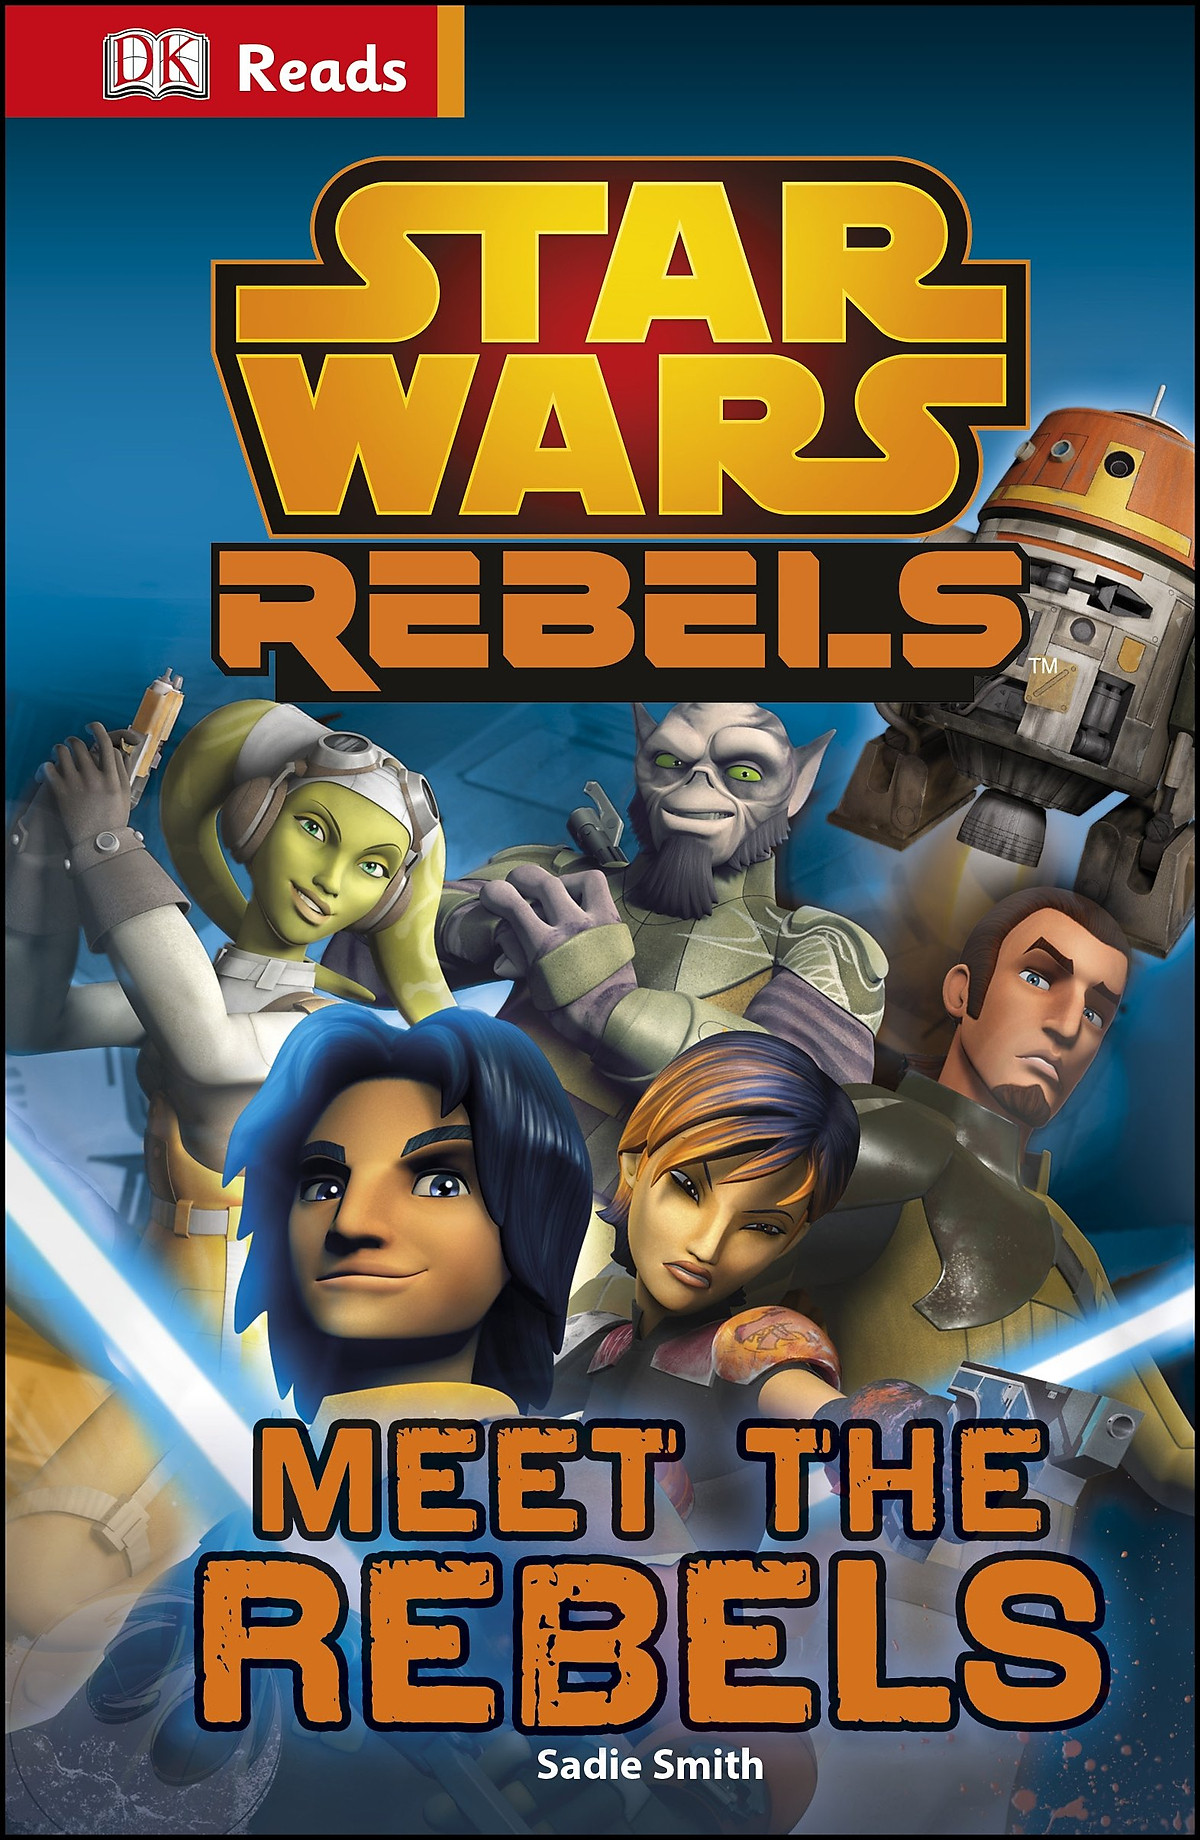 DK Reads Star Wars Rebels Meet the Rebels